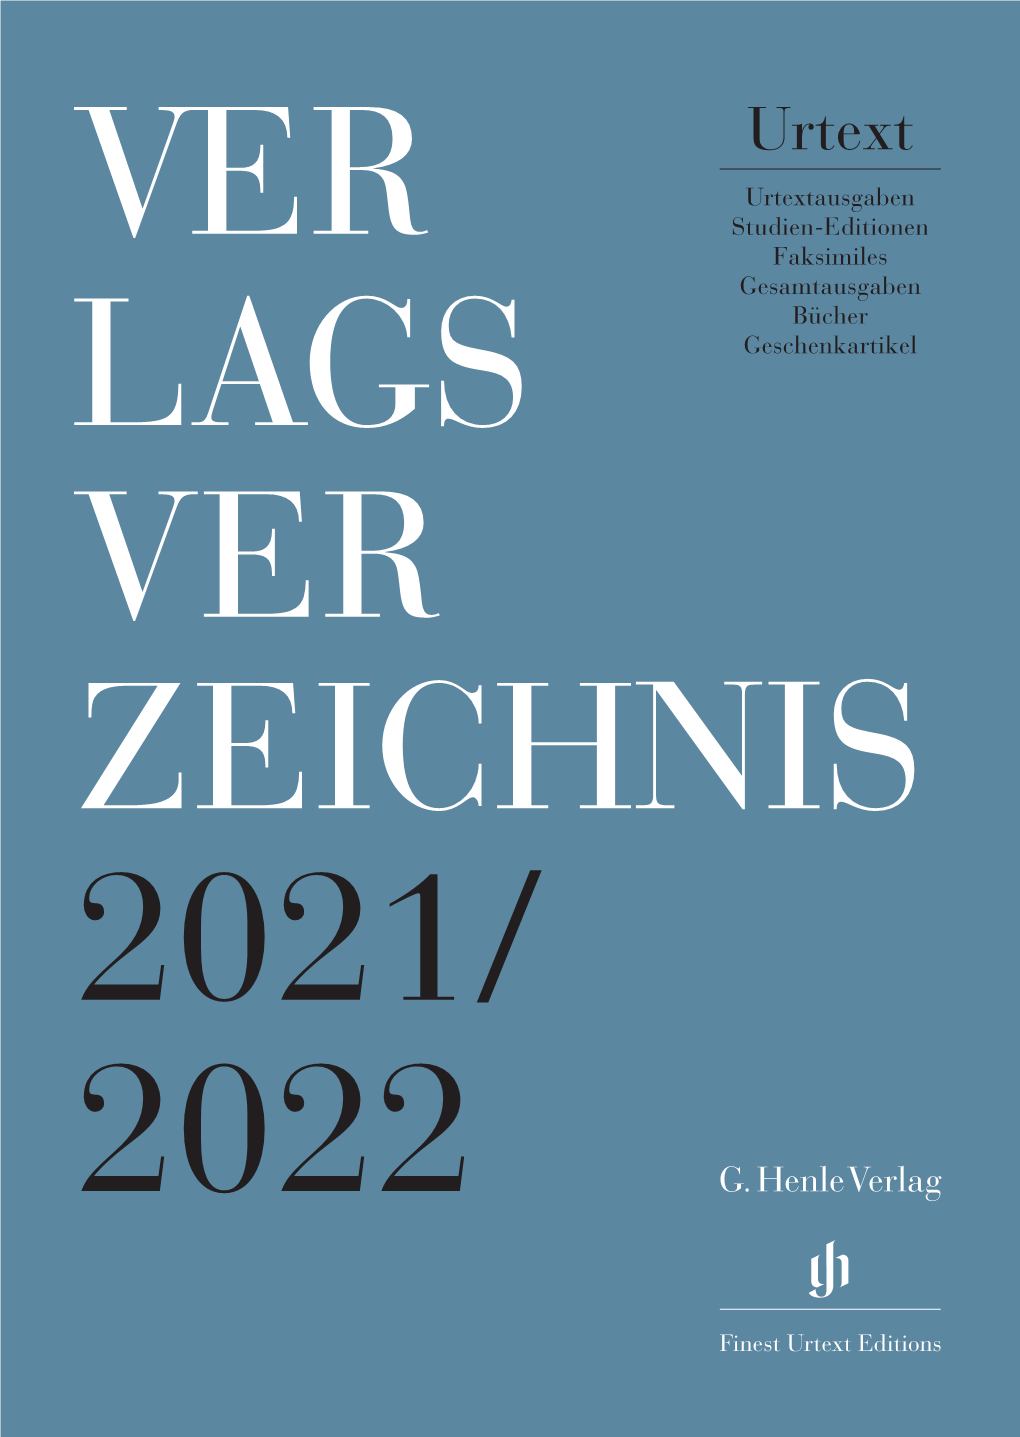 Verlagsverzeichnis 2021/2022